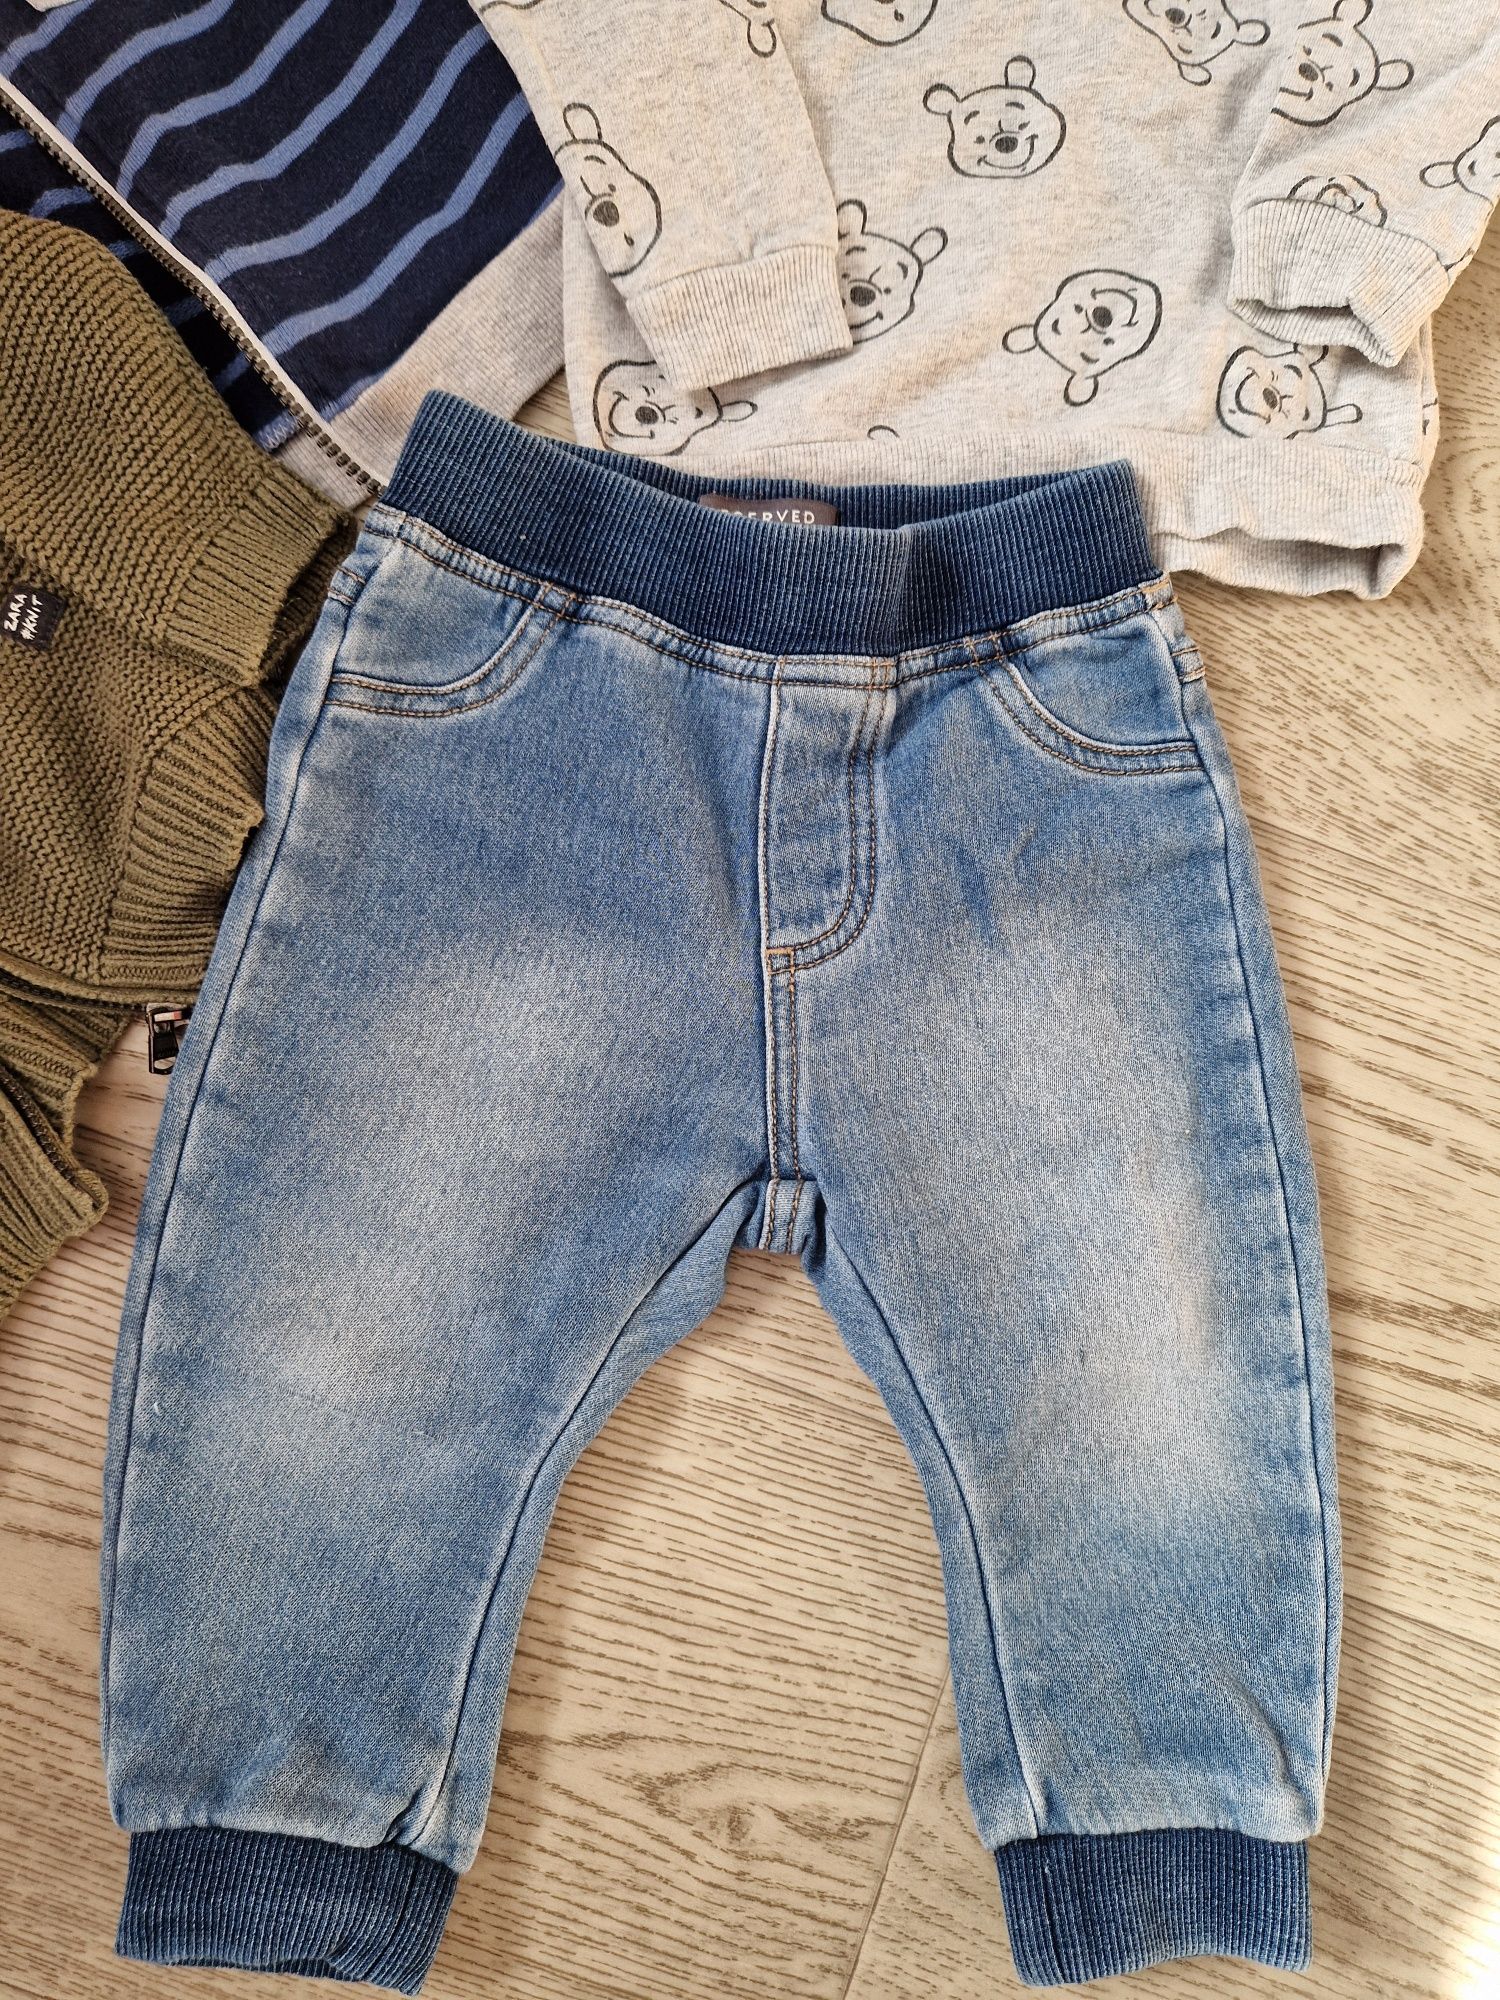 Набір речей для хлопчика/ Zara kids/ джинси / нарядний костюм